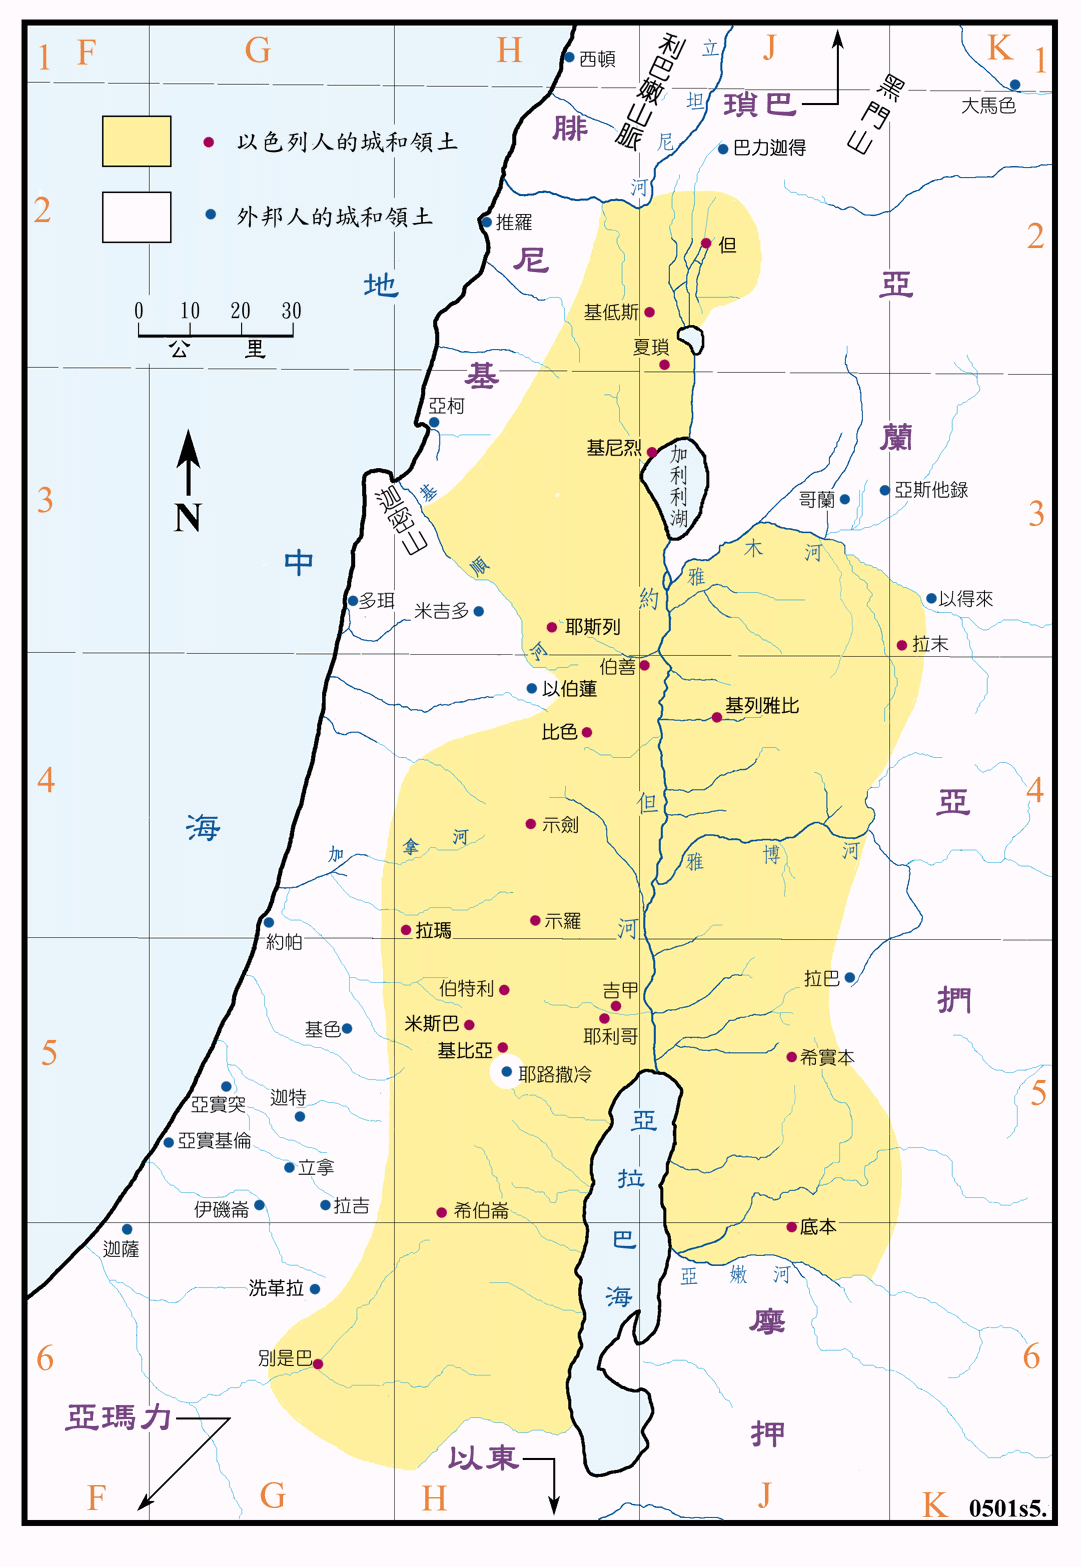 扫罗时代以色列的疆域